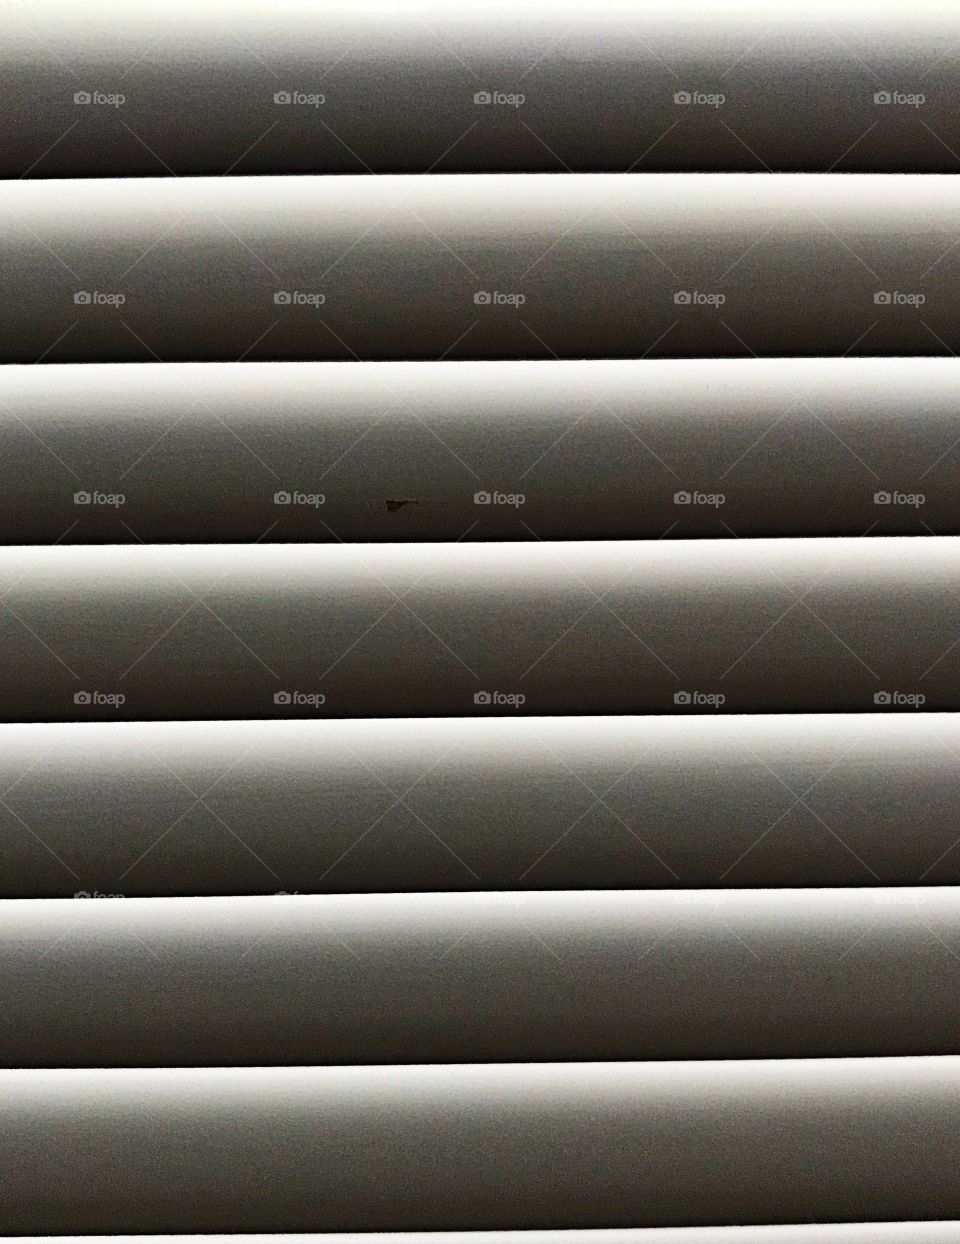 Mini blinds 2